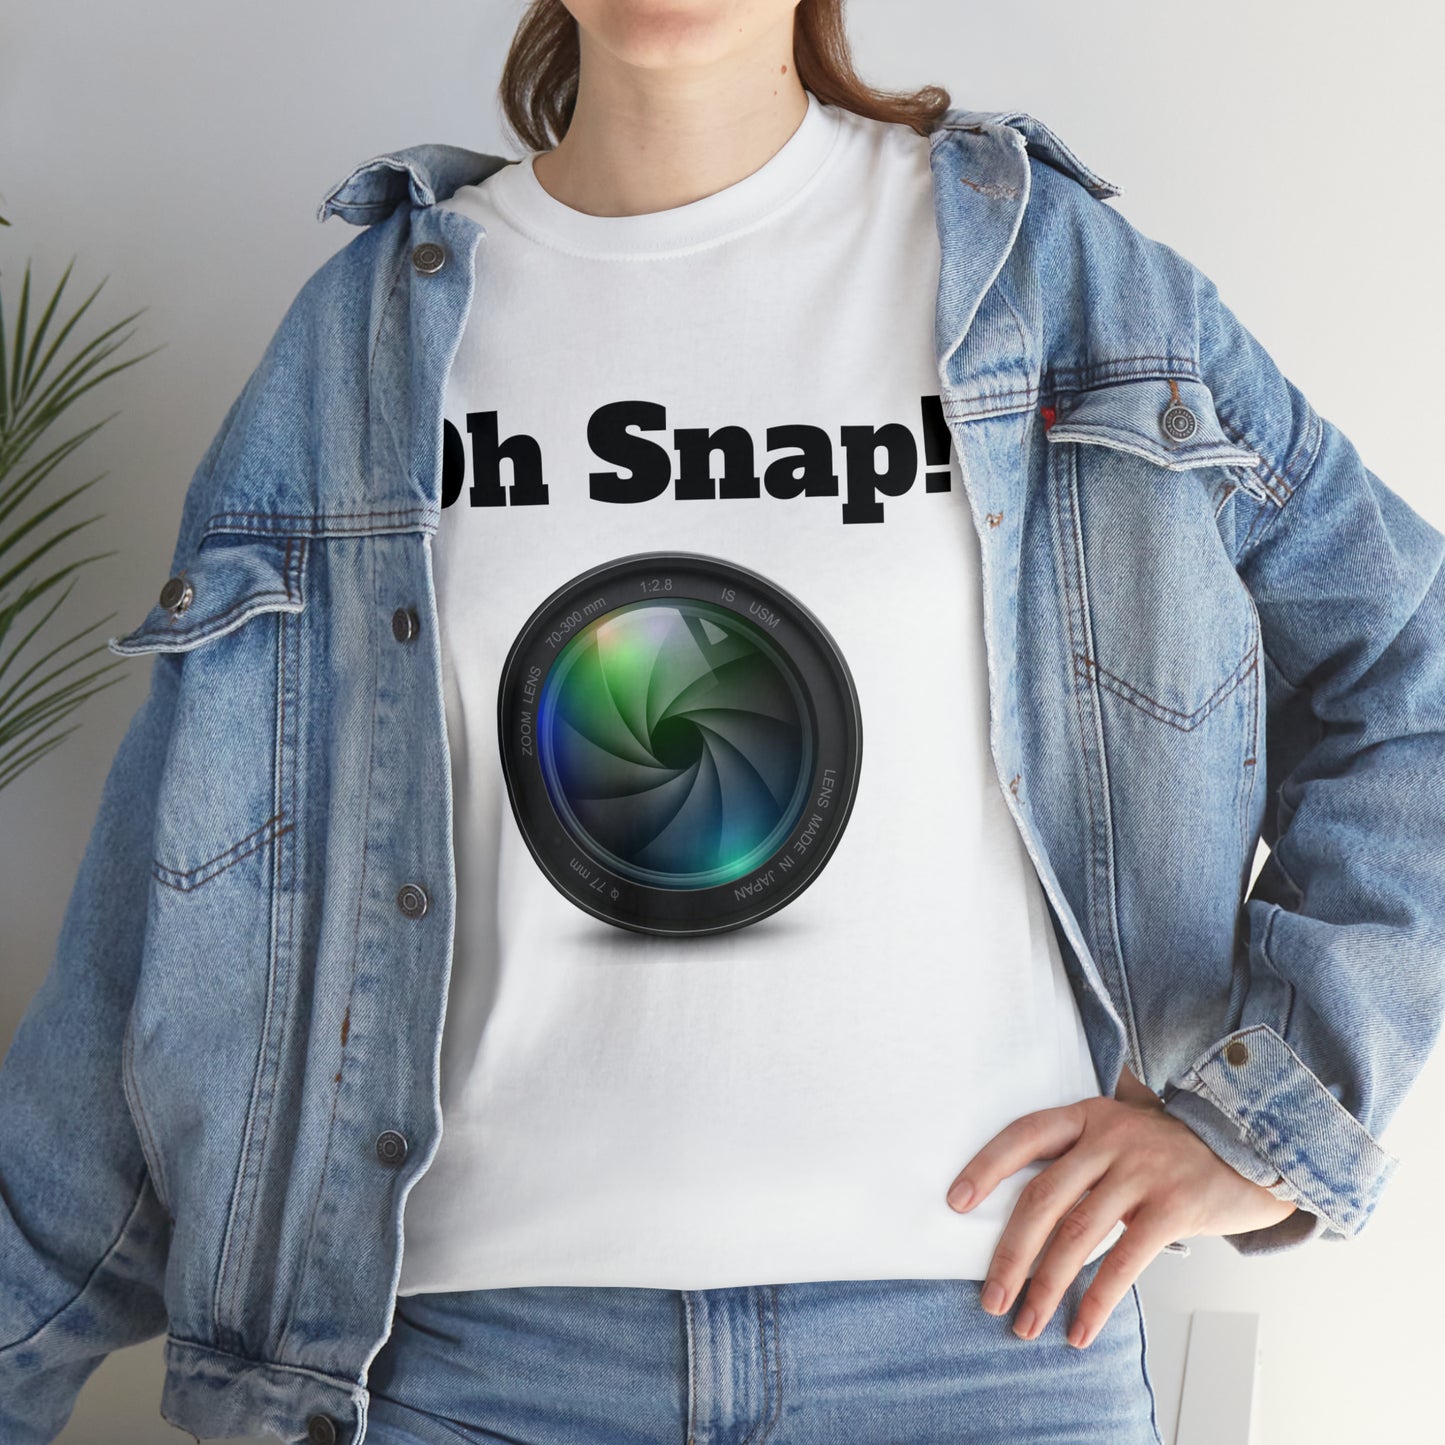 Oh Snap! T-shirt